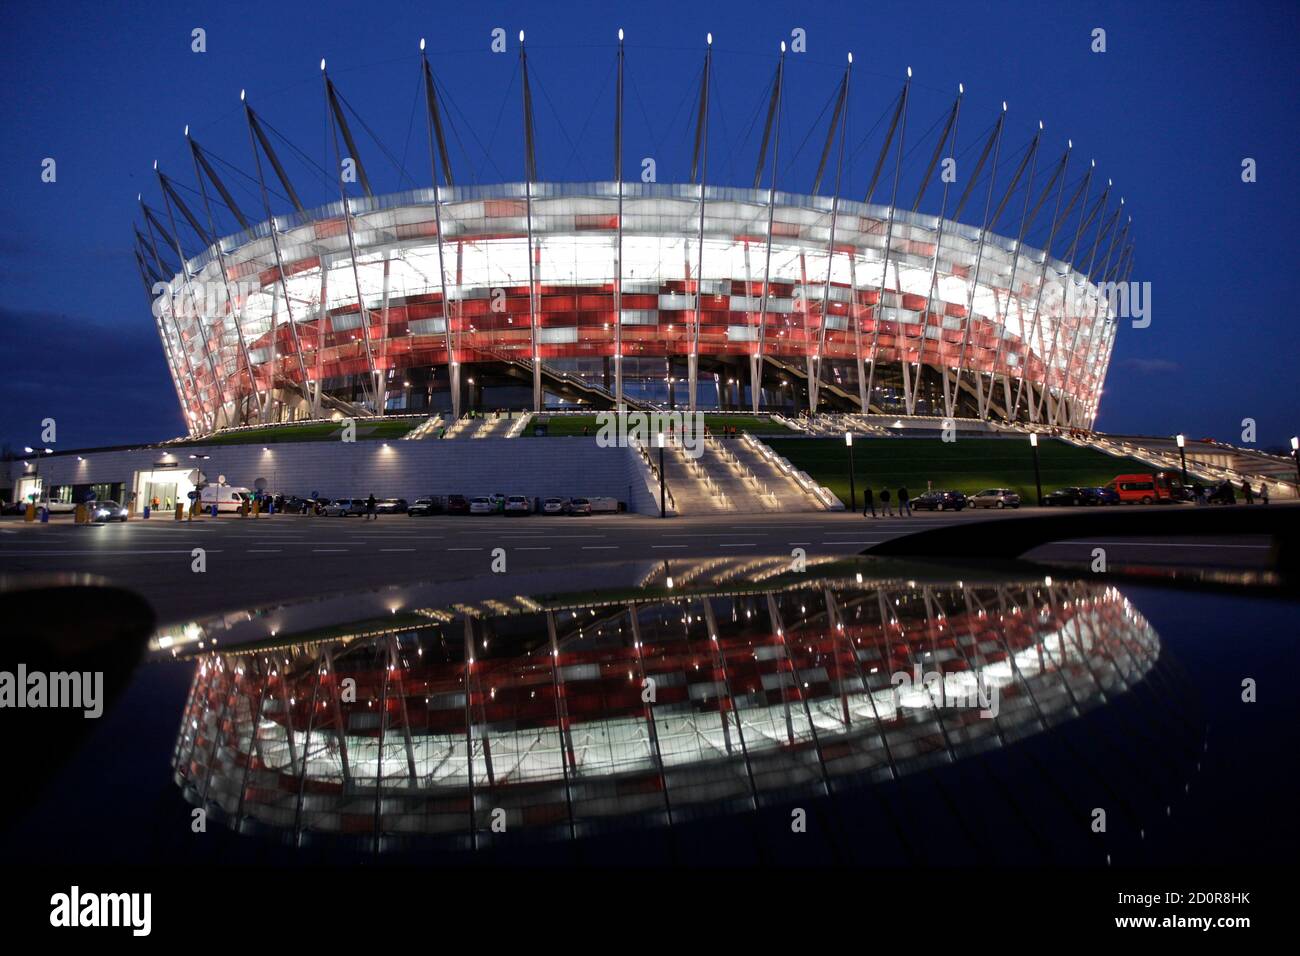 Топ стадионов. Футбольный стадион в Варшаве. Национальный стадион (Варшава). Футбольные стадионы Европы. UEFA Euro 2012 Stadion Narodowy.